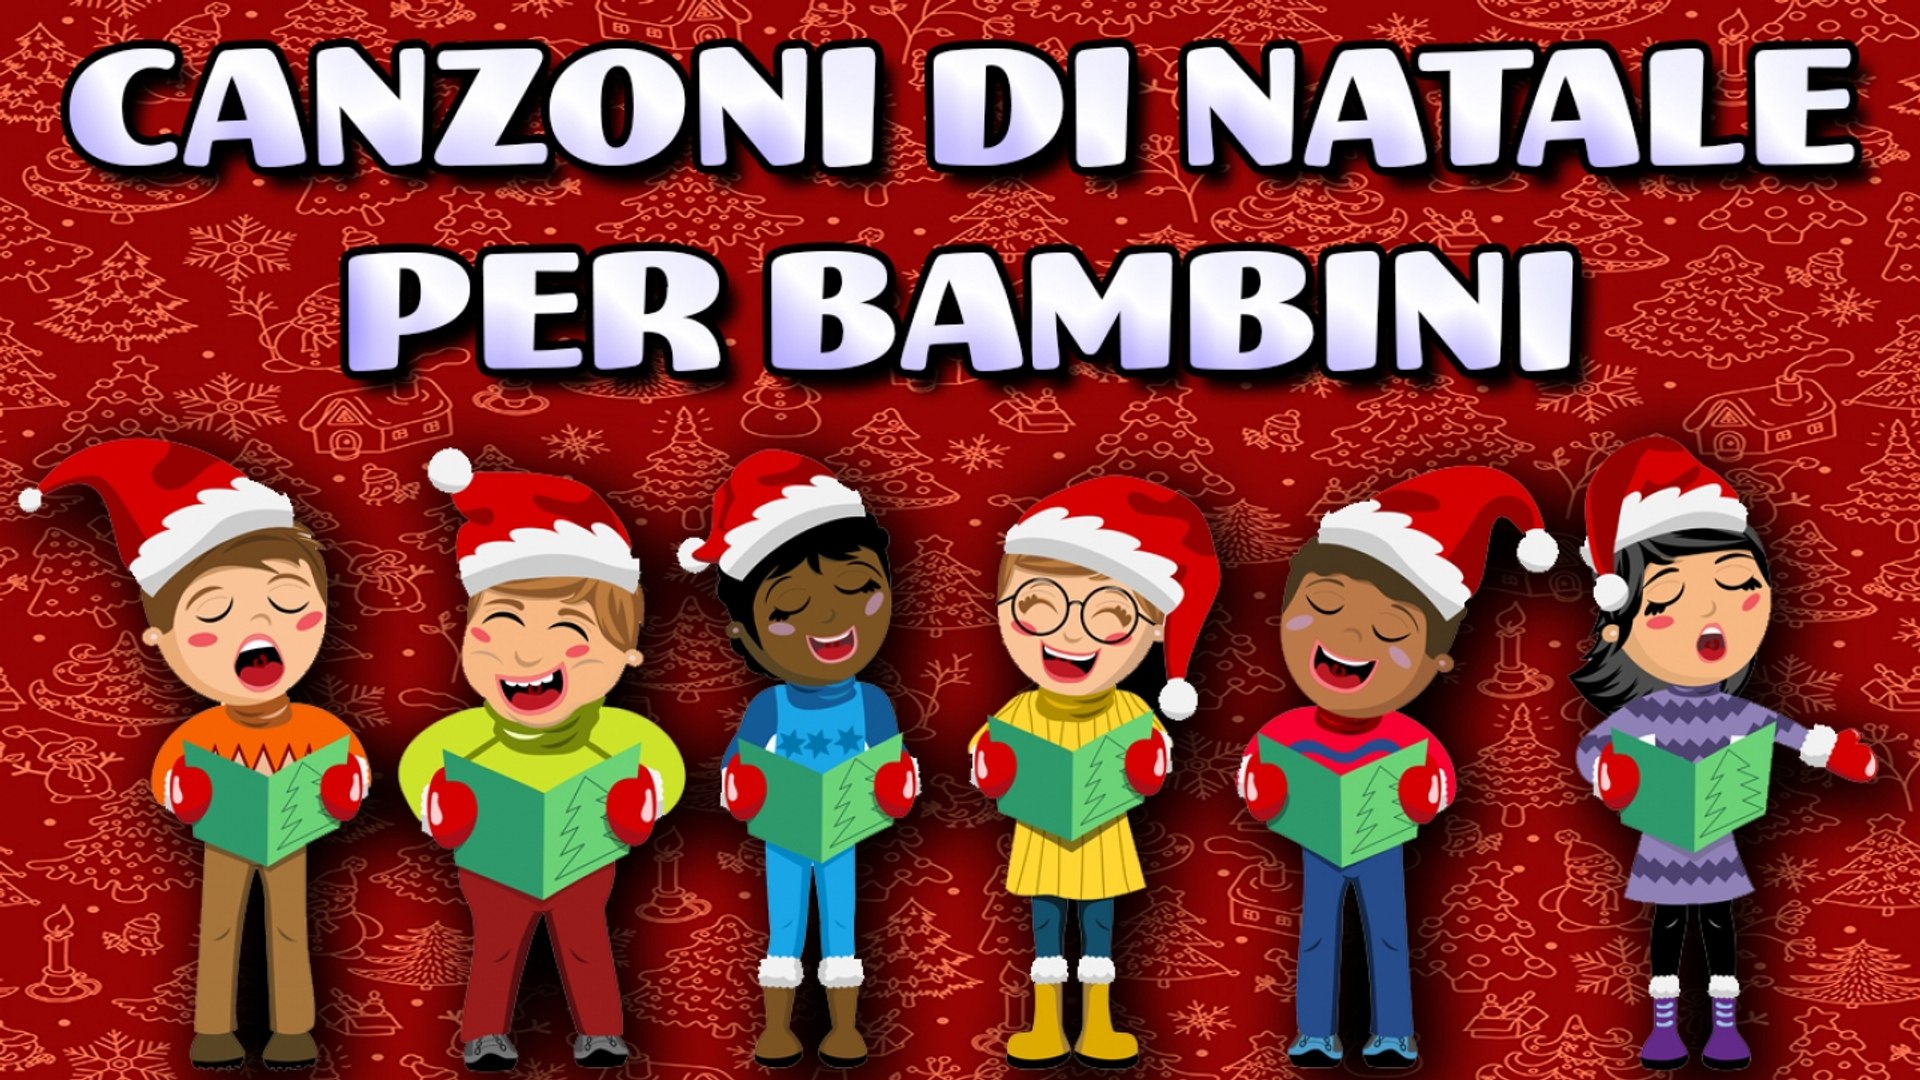 Canzoni Di Natale.Va Canzoni Di Natale Per Bambini 2019 Natalebambini Video Dailymotion